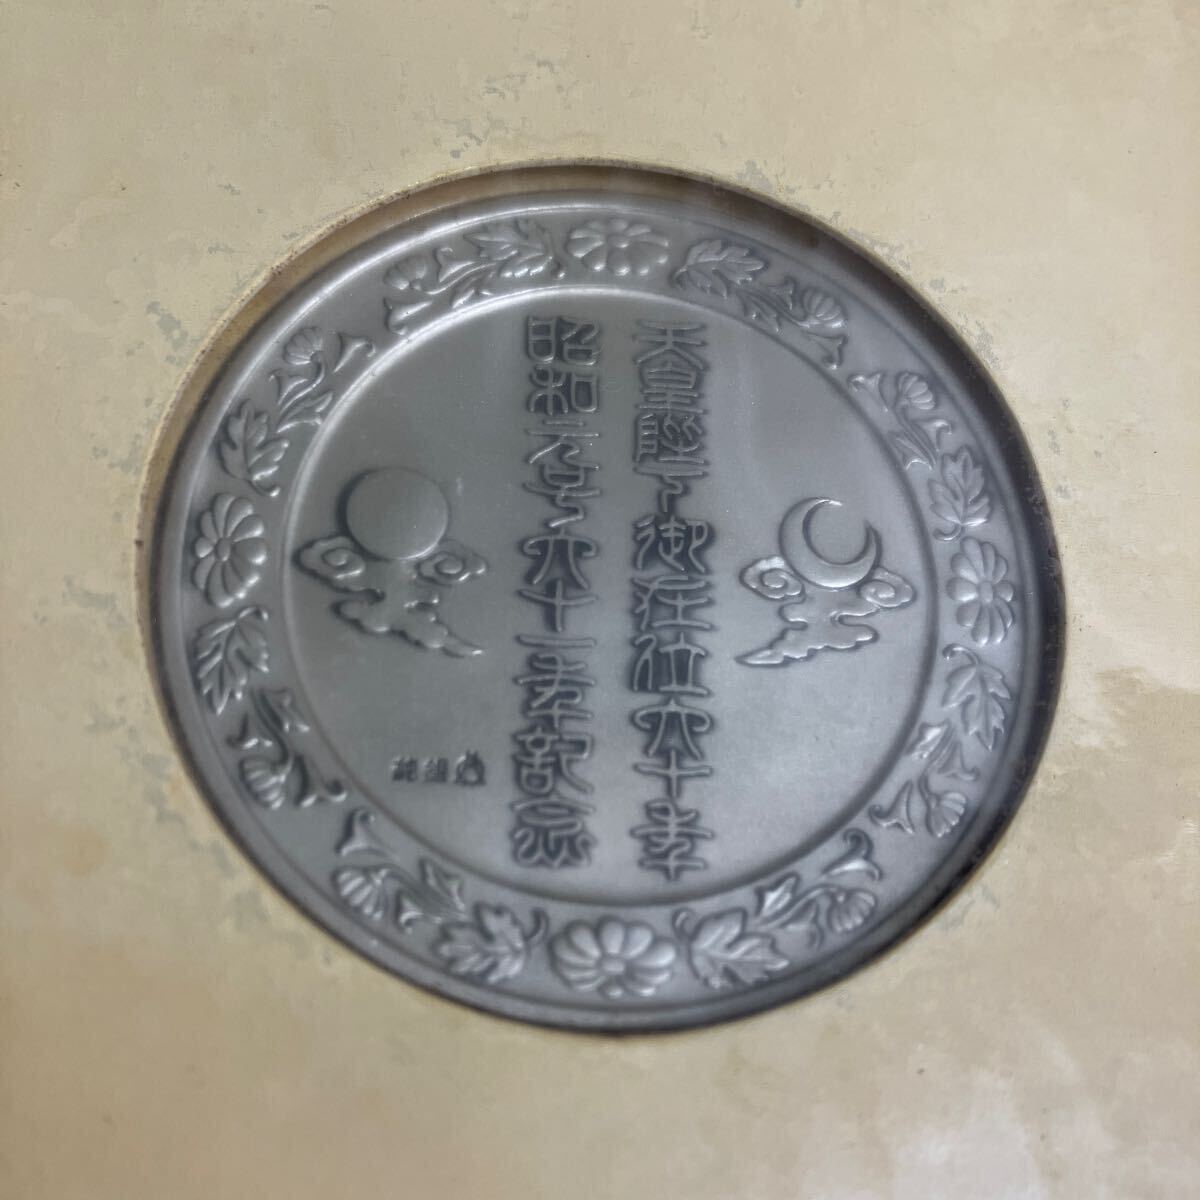 天皇陛下御在位六十年 昭和元年61年 奉祝記念メダル 記念切手カバーのセット 純銀製 直径50ミリ重さ65グラム 724/2200 の画像5